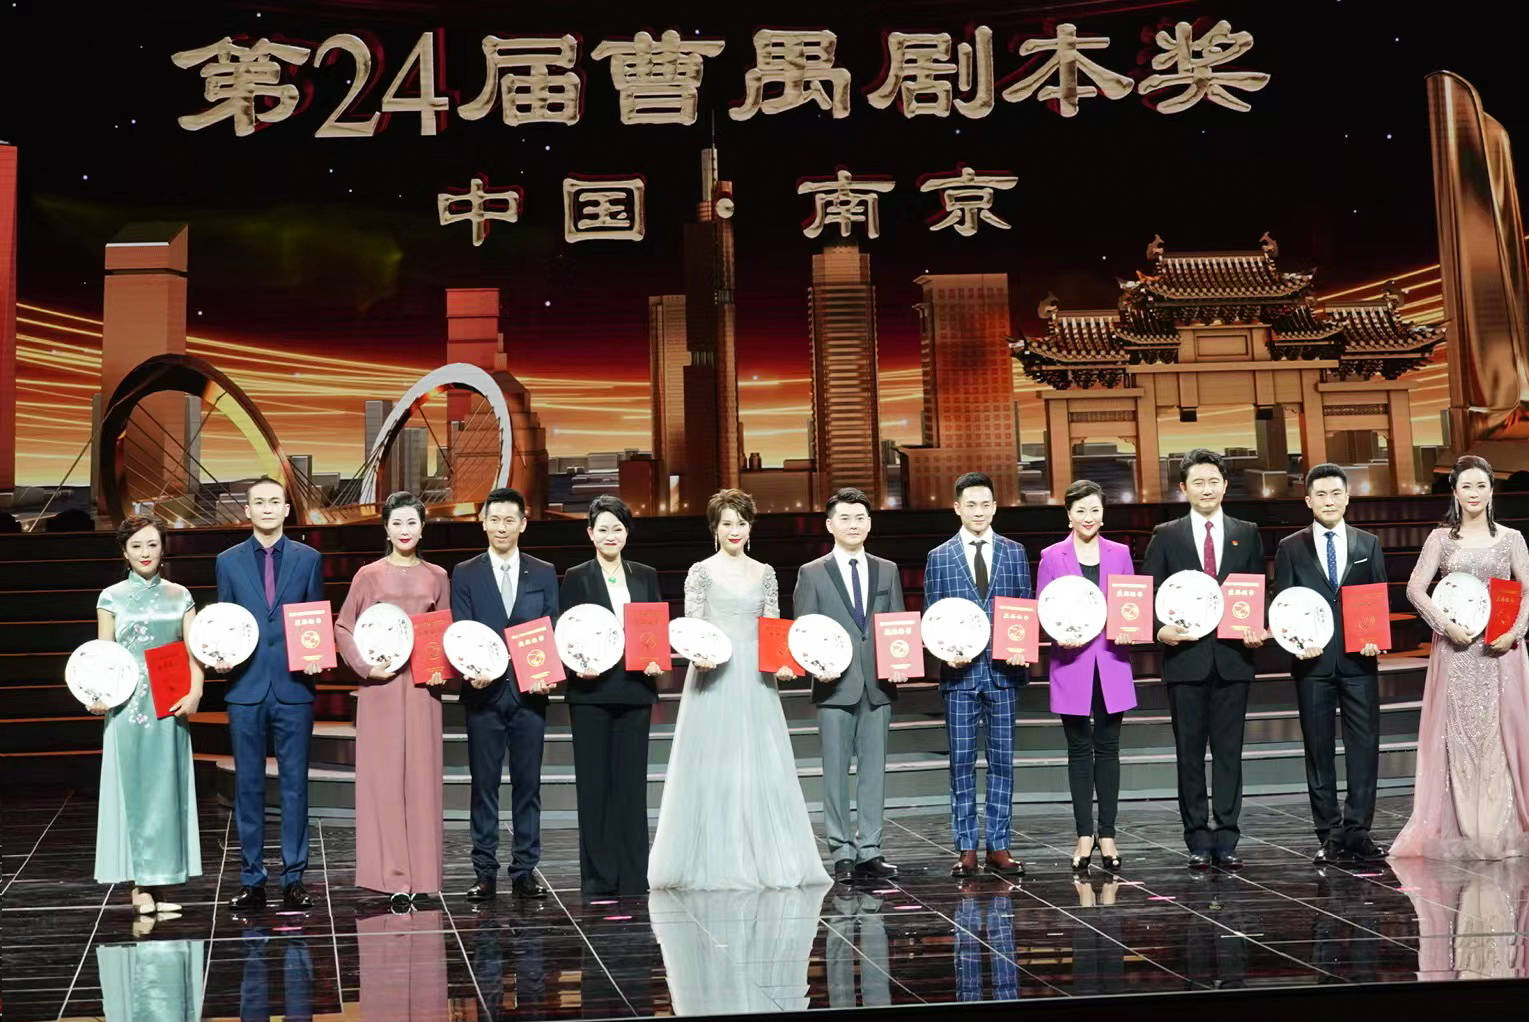 涂松岩获第30届中国戏剧梅花奖演绎话剧人间烟火引观众共情